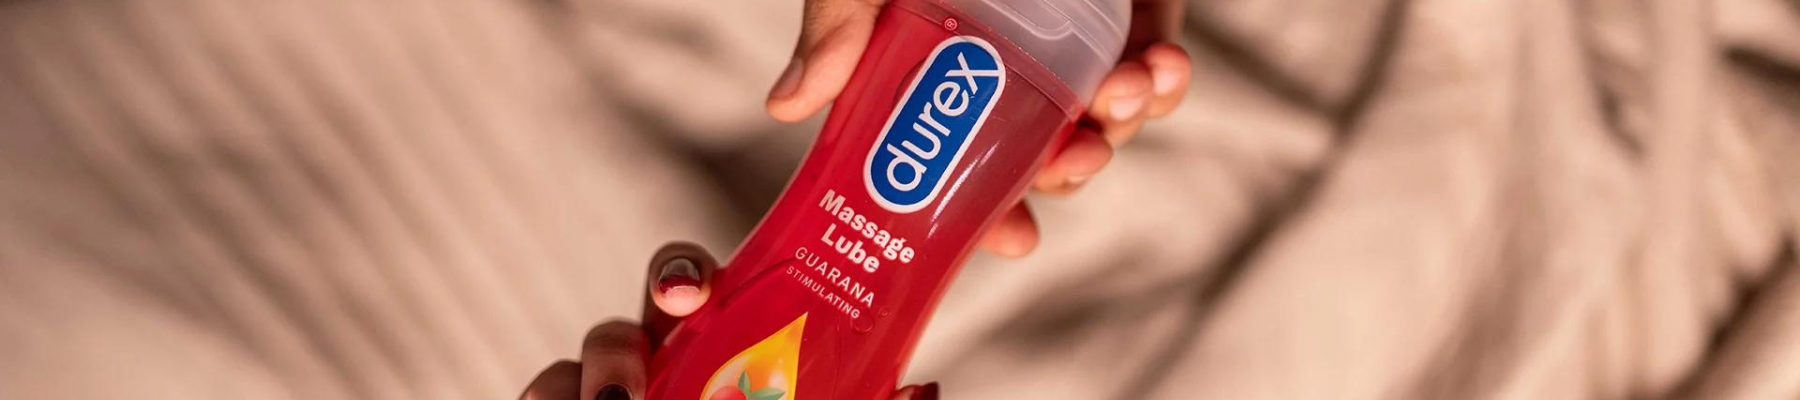 Durex Lubricants & Condoms